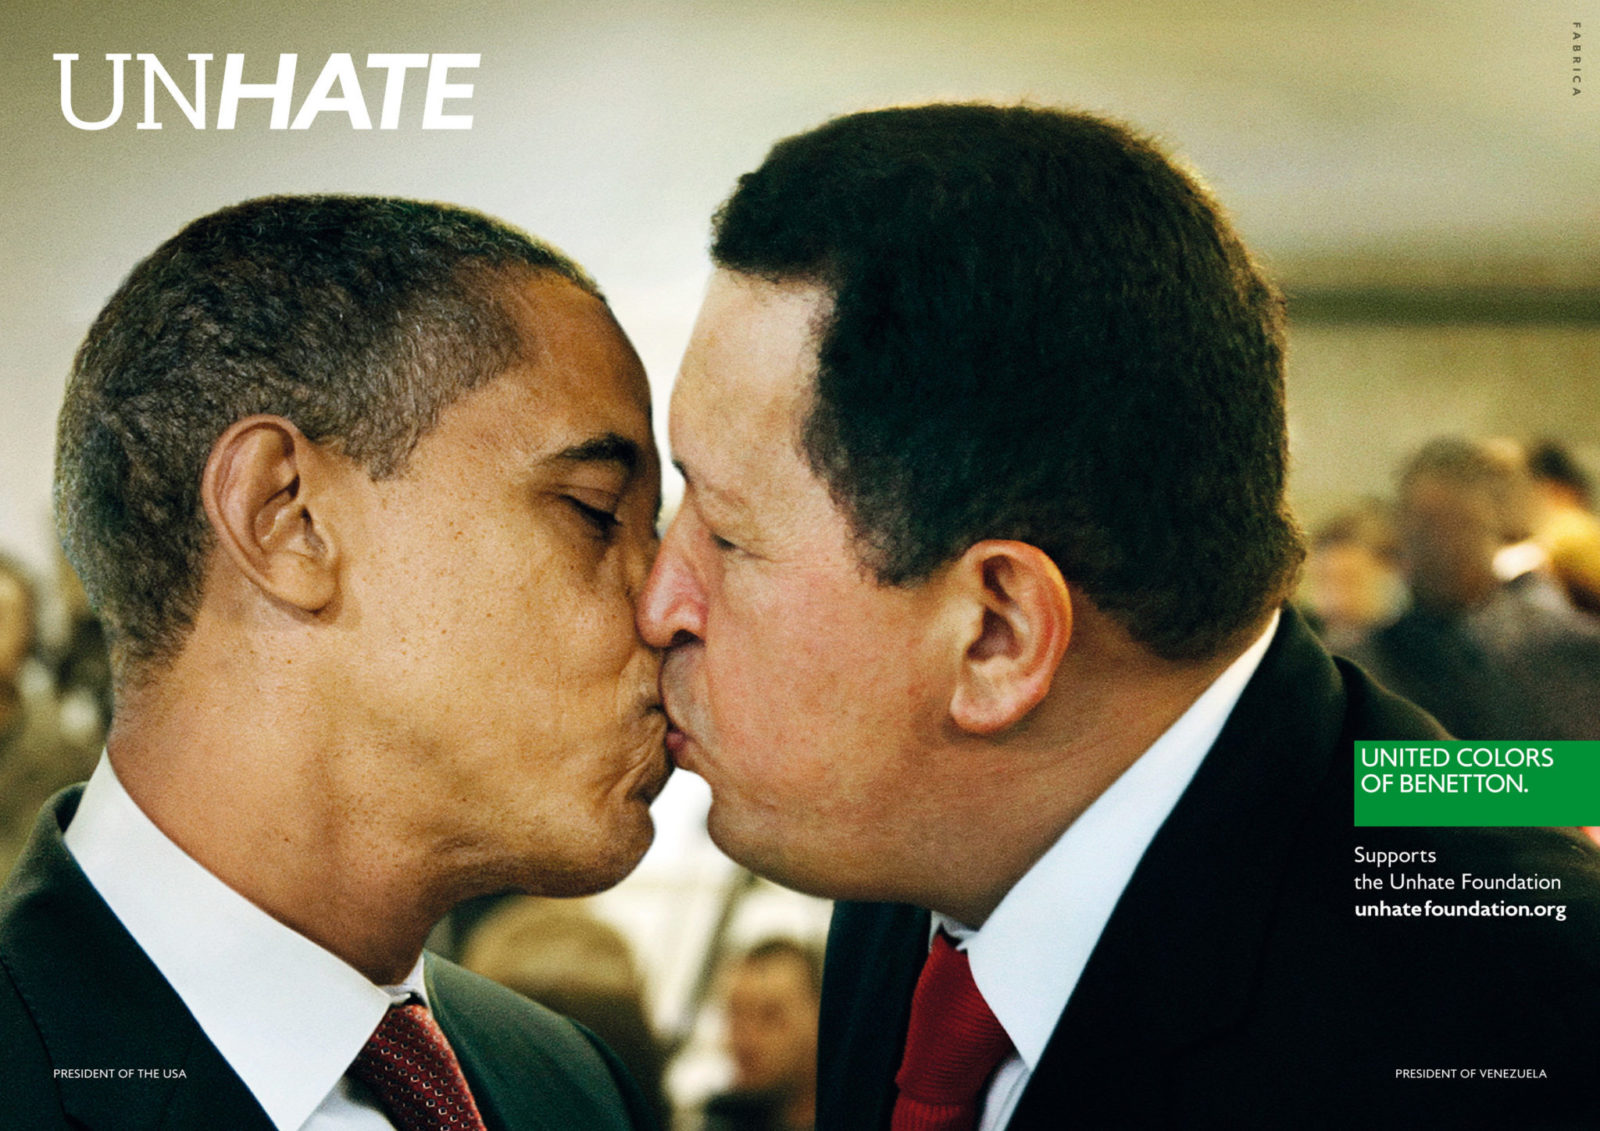 Fotografia reklamowa marki Benetton. Na zdjęciu widać całujących się mężczyzn, jeden czarnoskóry, a drogi biały o czarnych włosach - prezydenci.